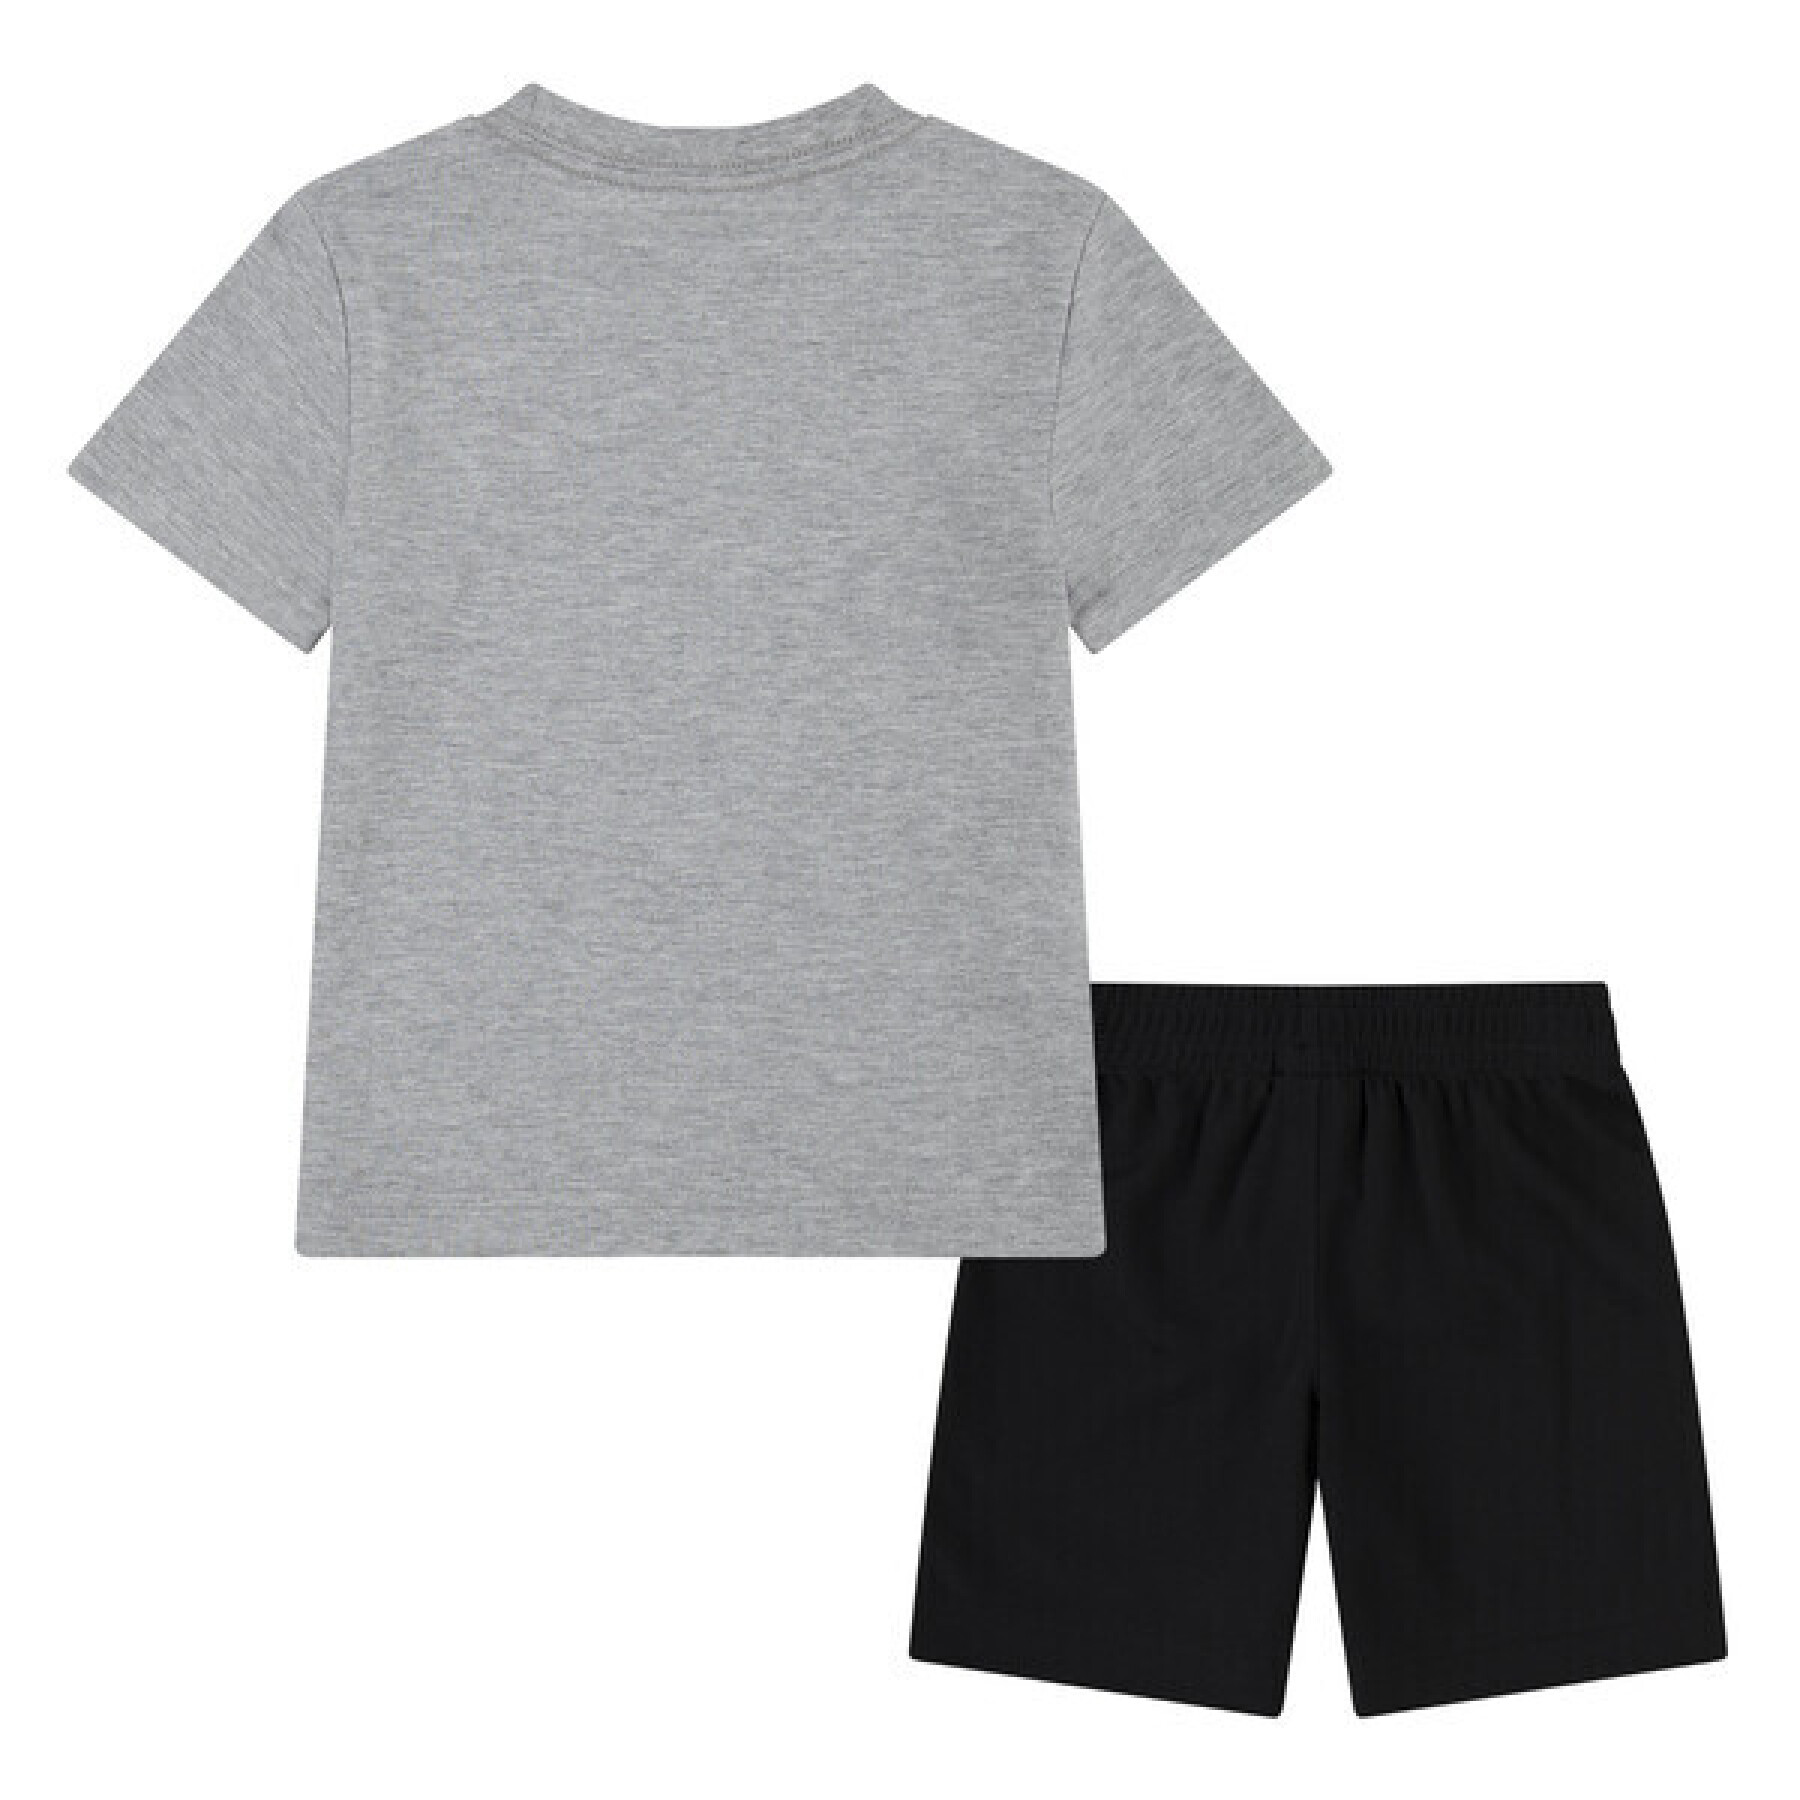 Korte broek en t-shirt voor kinderen Nike GFX FT